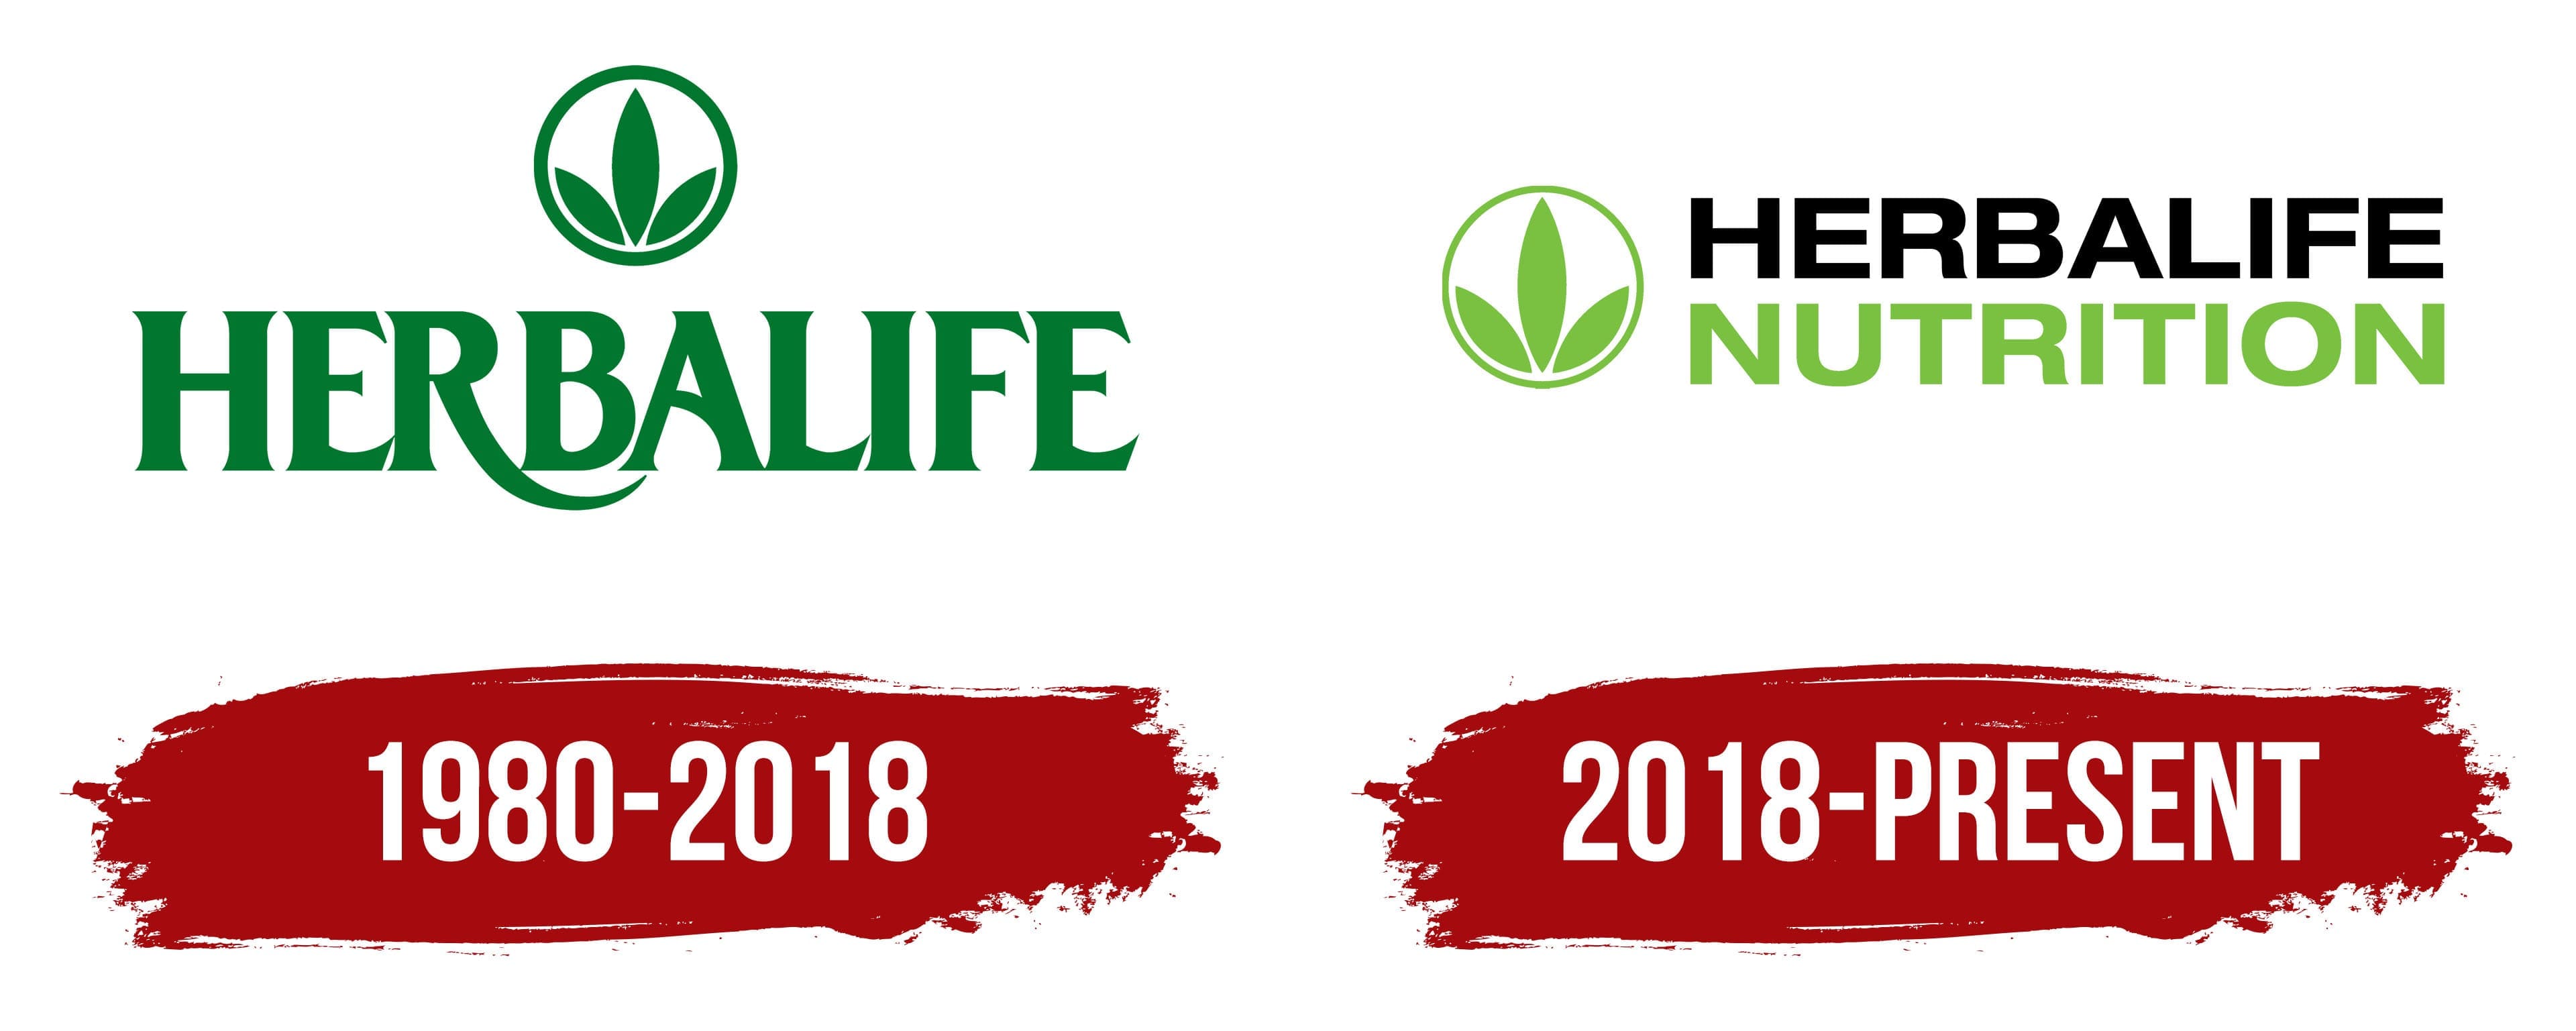 Herbalife logo in words | Herbalife, Herbalife clothing, Herbalife nutrition